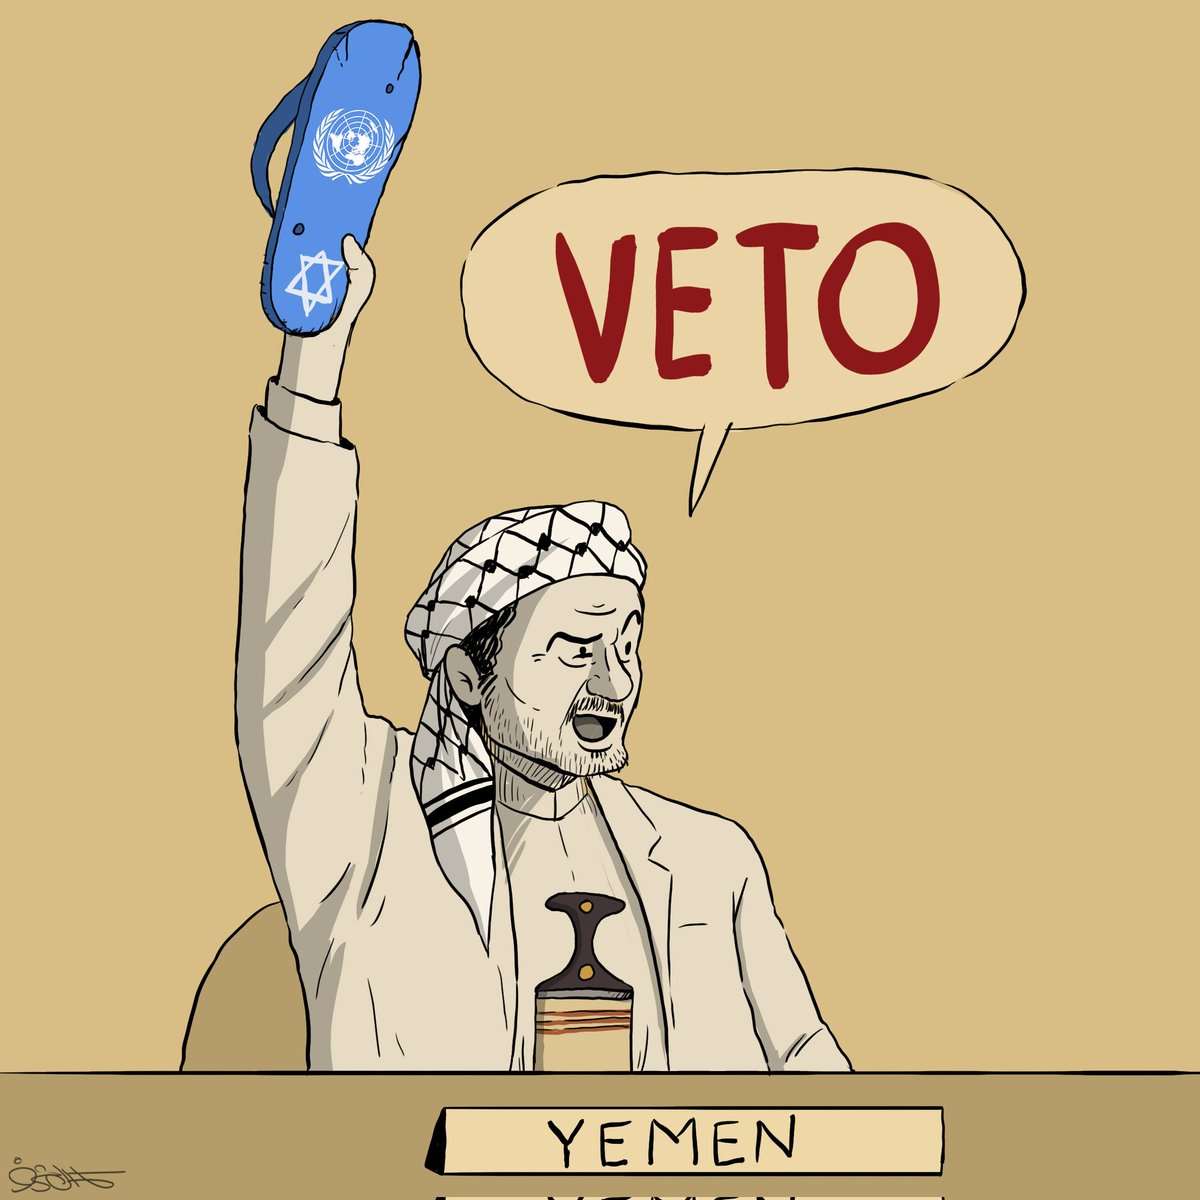 قرارات مجلس الأمن تحت أقدام شعب اليمن فيتو يمني ضد قرارات مجلس أمن إسرائيل #غزة_تُباد #ISISreal #GazaGenocide #UNCS #Yemen #Israel #RedSea #USA #Britain @kamalsharf كمال شرف #كاريكاتير #Caricature